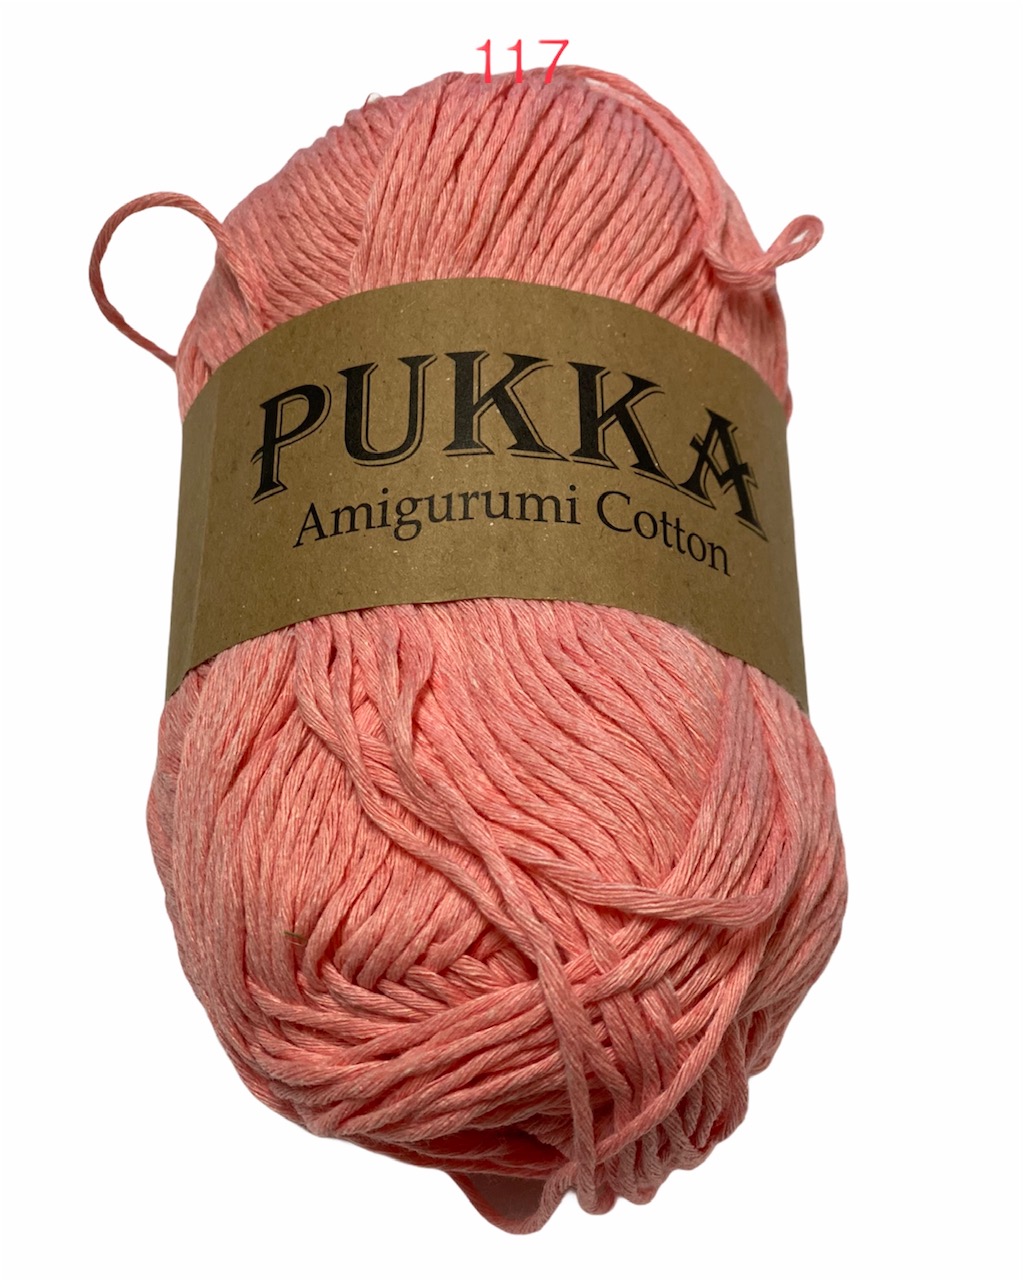 PUKKA Amigurumi Cotton 100g,117